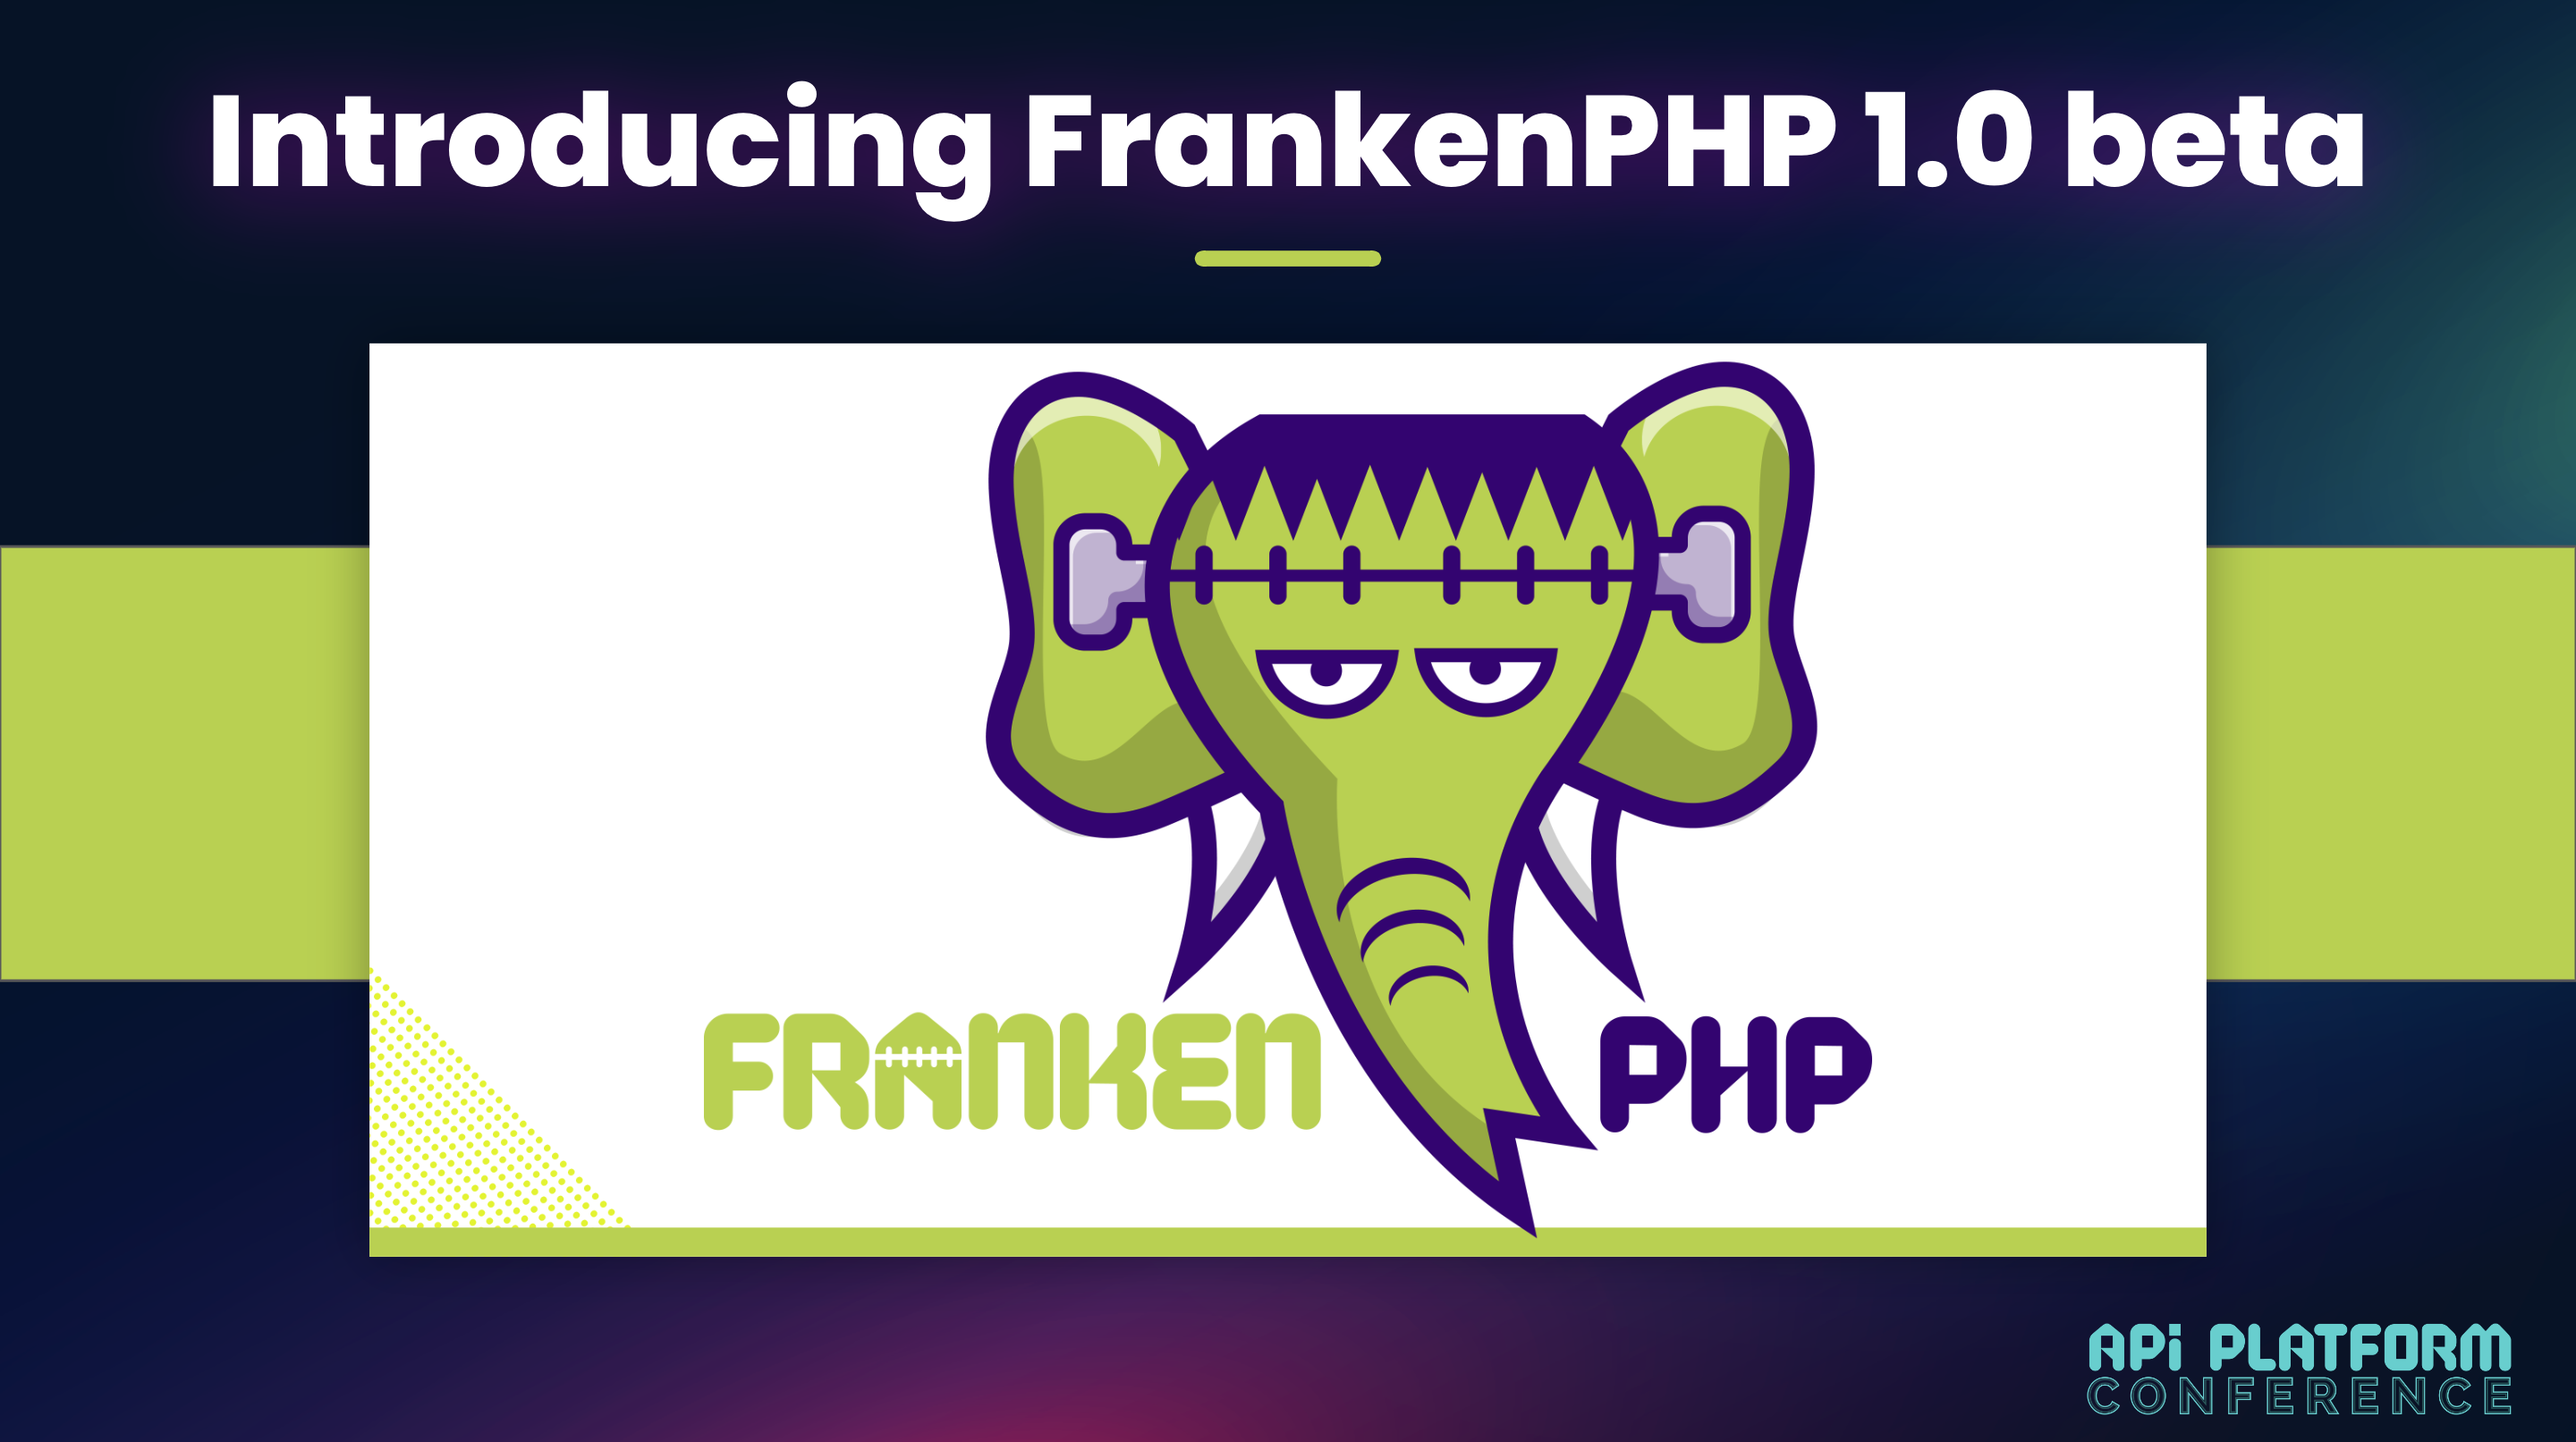 FrankenPHP 1.0 beta